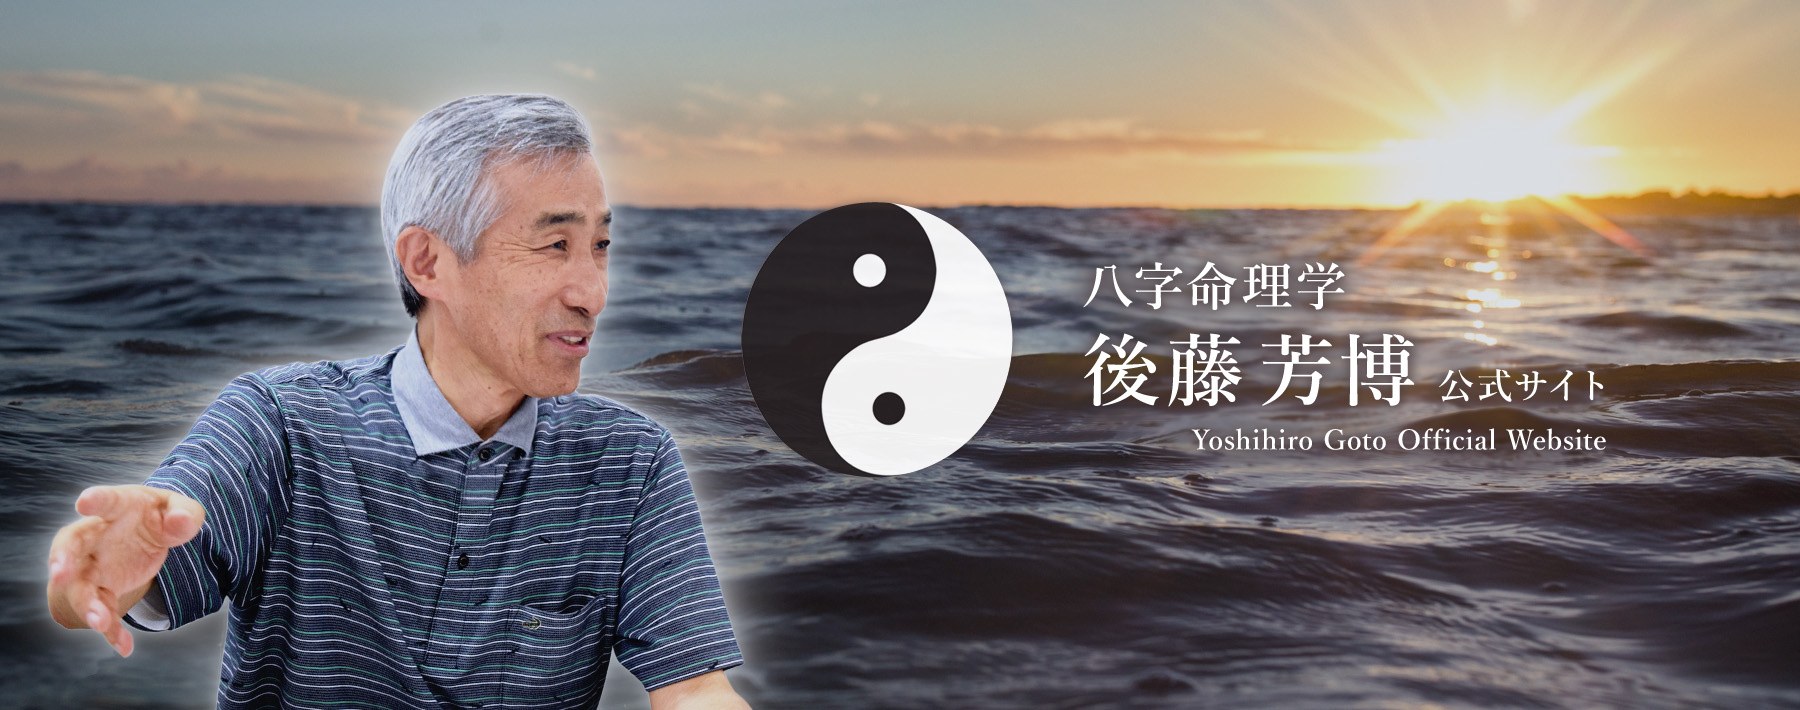 八字命理学 後藤芳博 公式サイト | Yoshihiro Goto Official Website